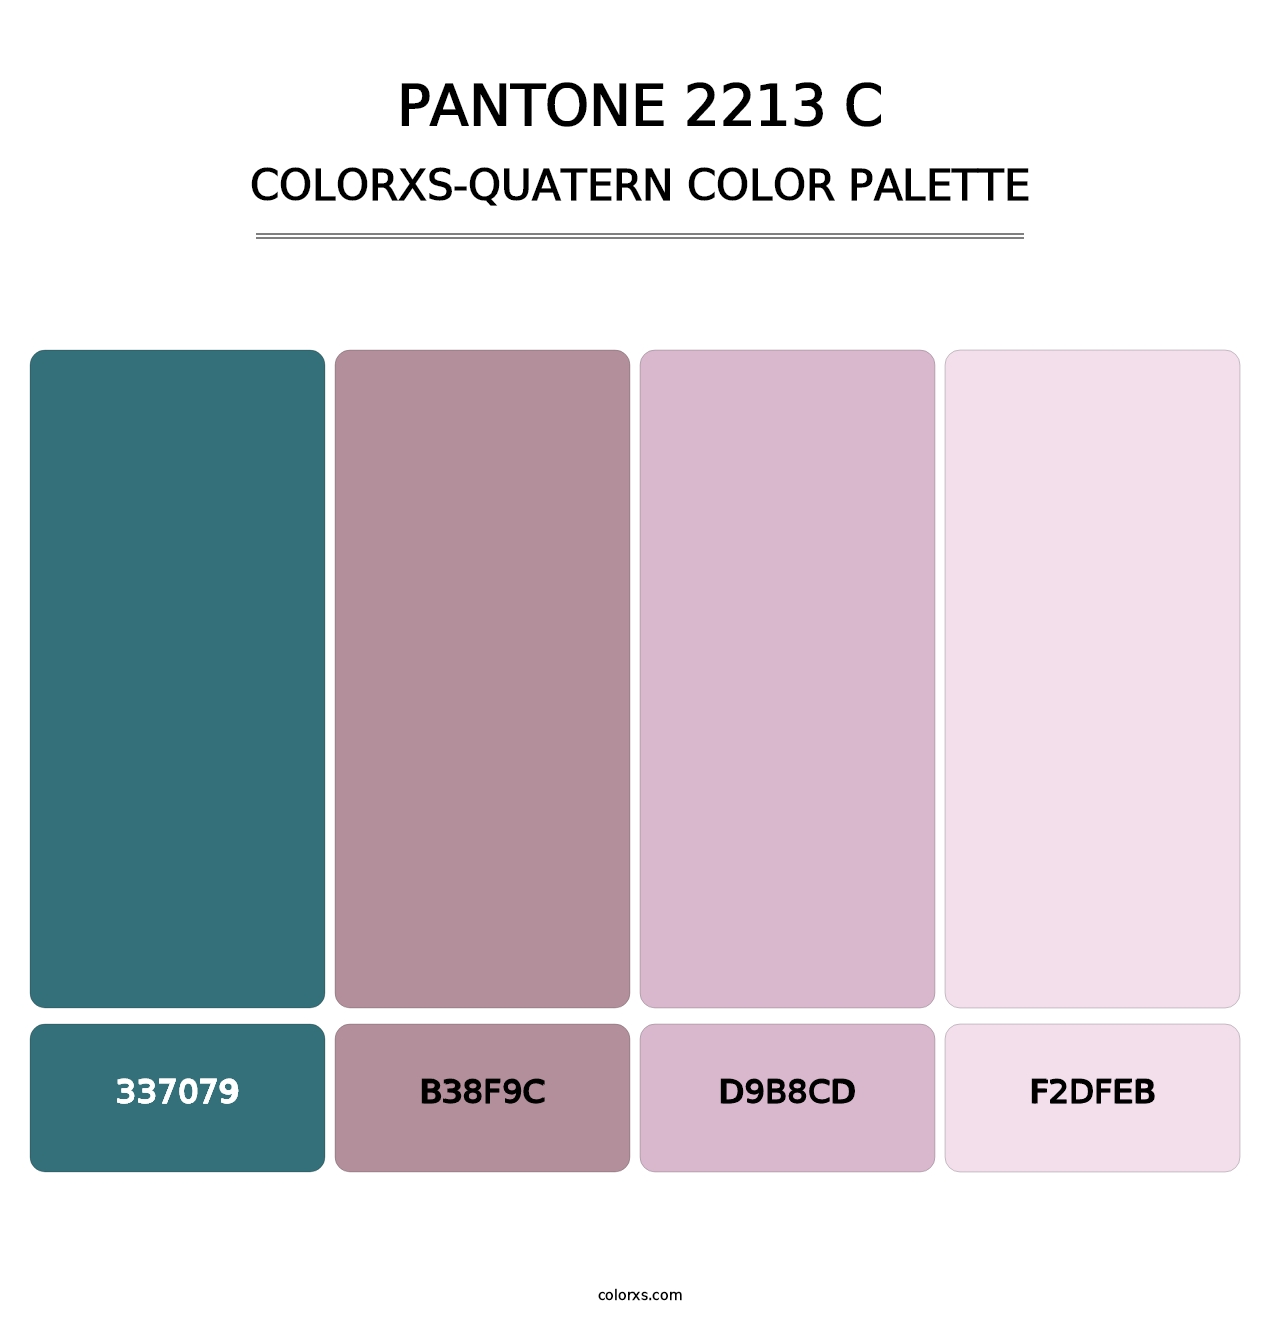 PANTONE 2213 C - Colorxs Quatern Palette